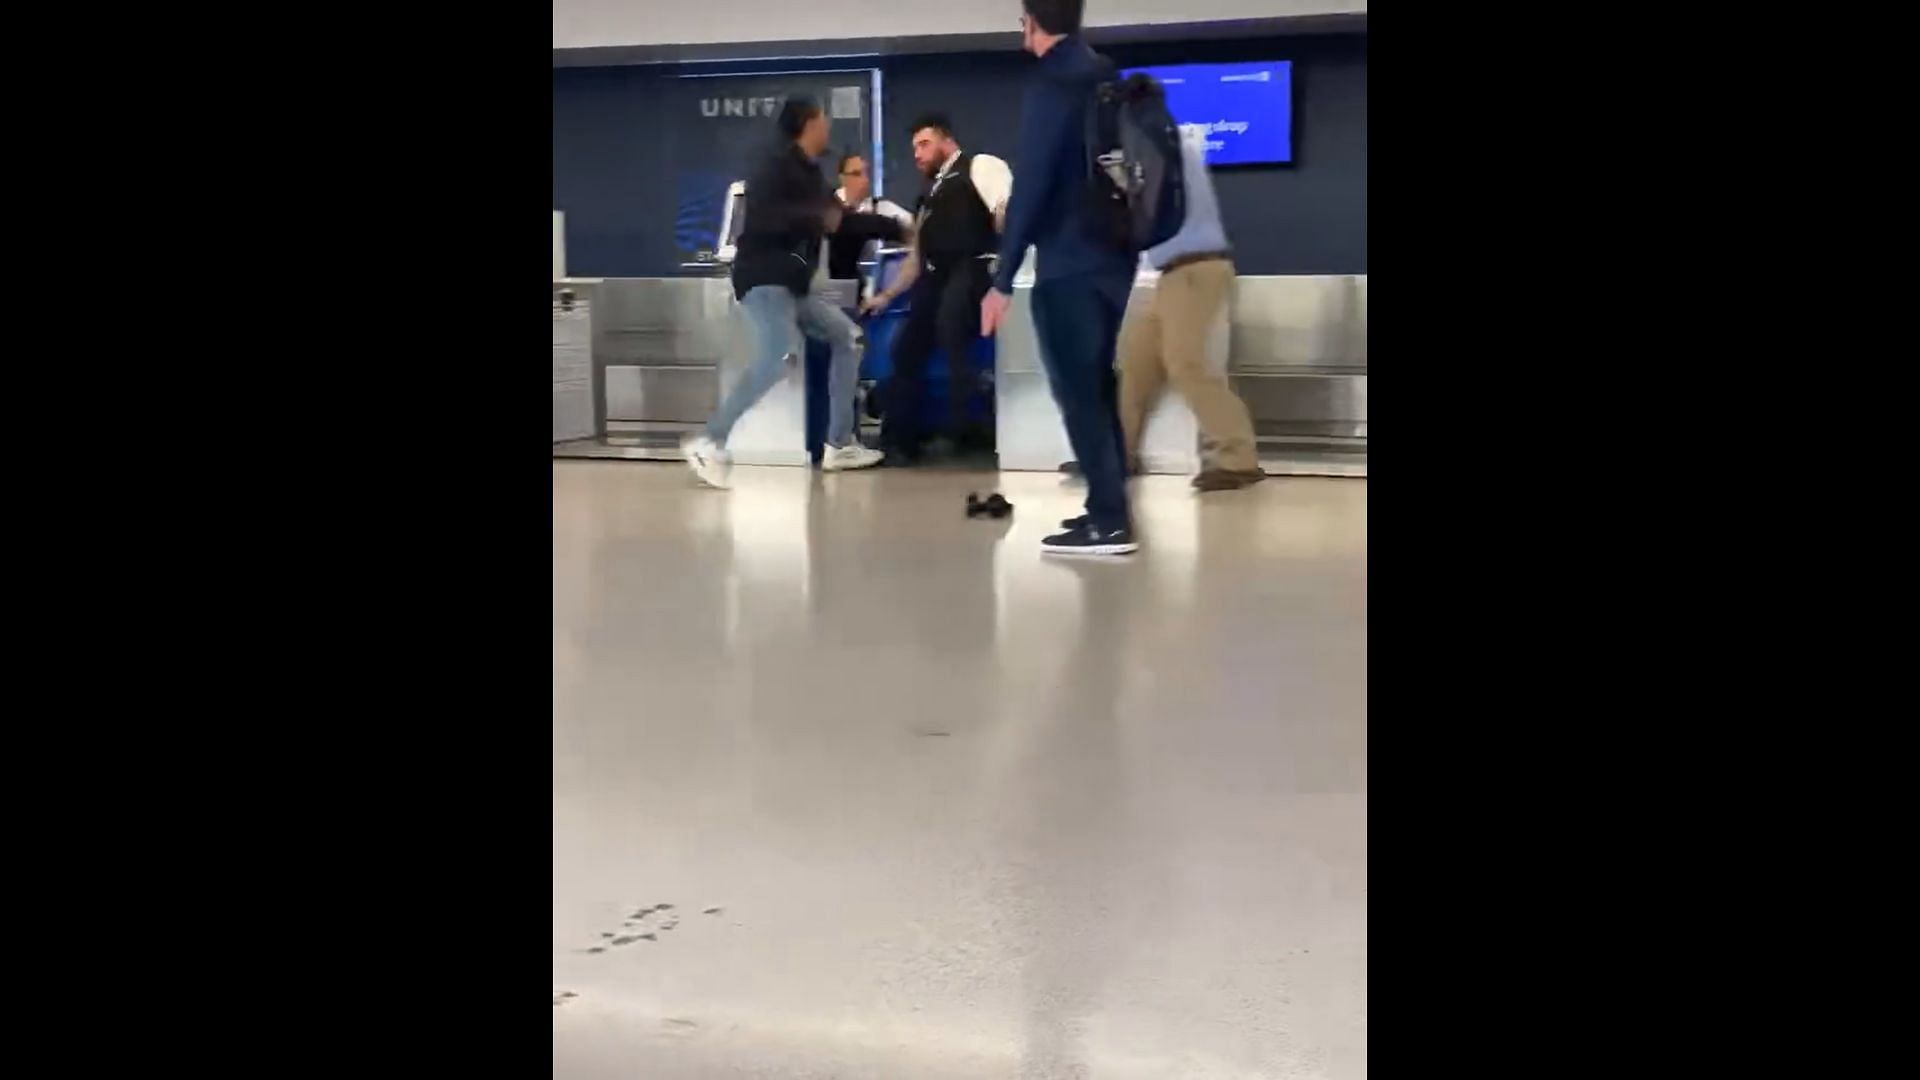 Brendan Langley was seen hitting an airport employee